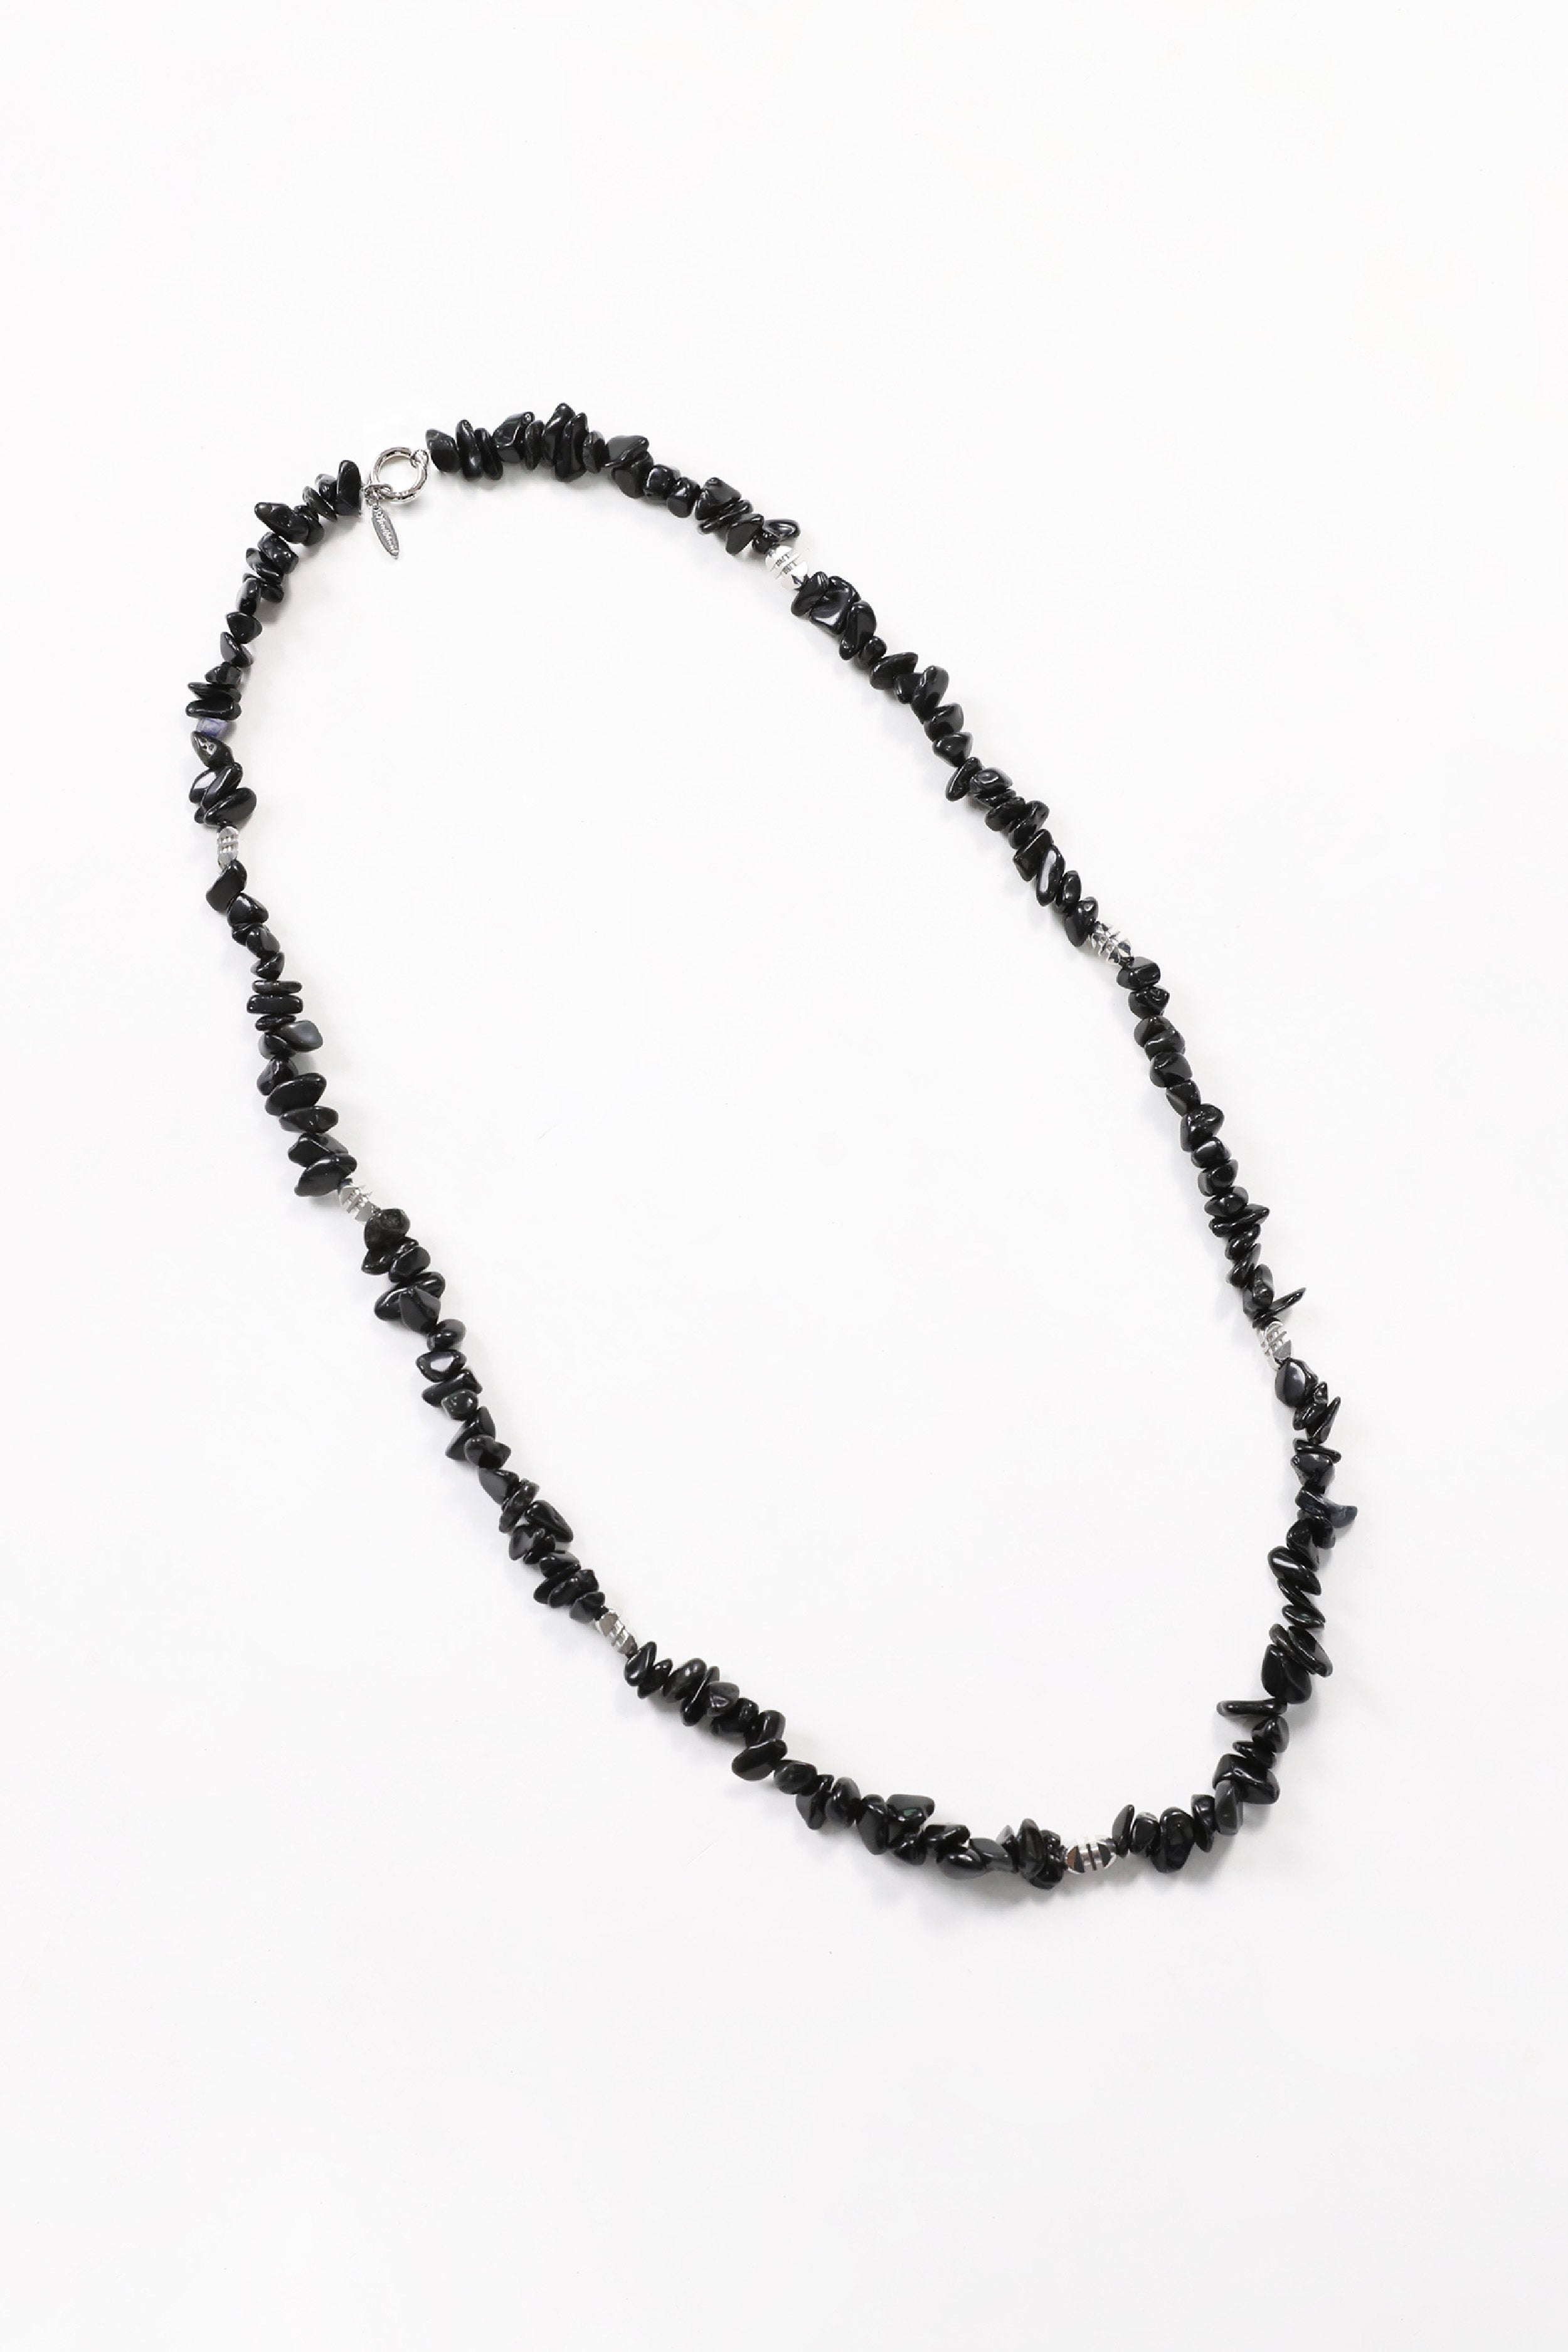 Badblood Spinel Beaded Necklace Black